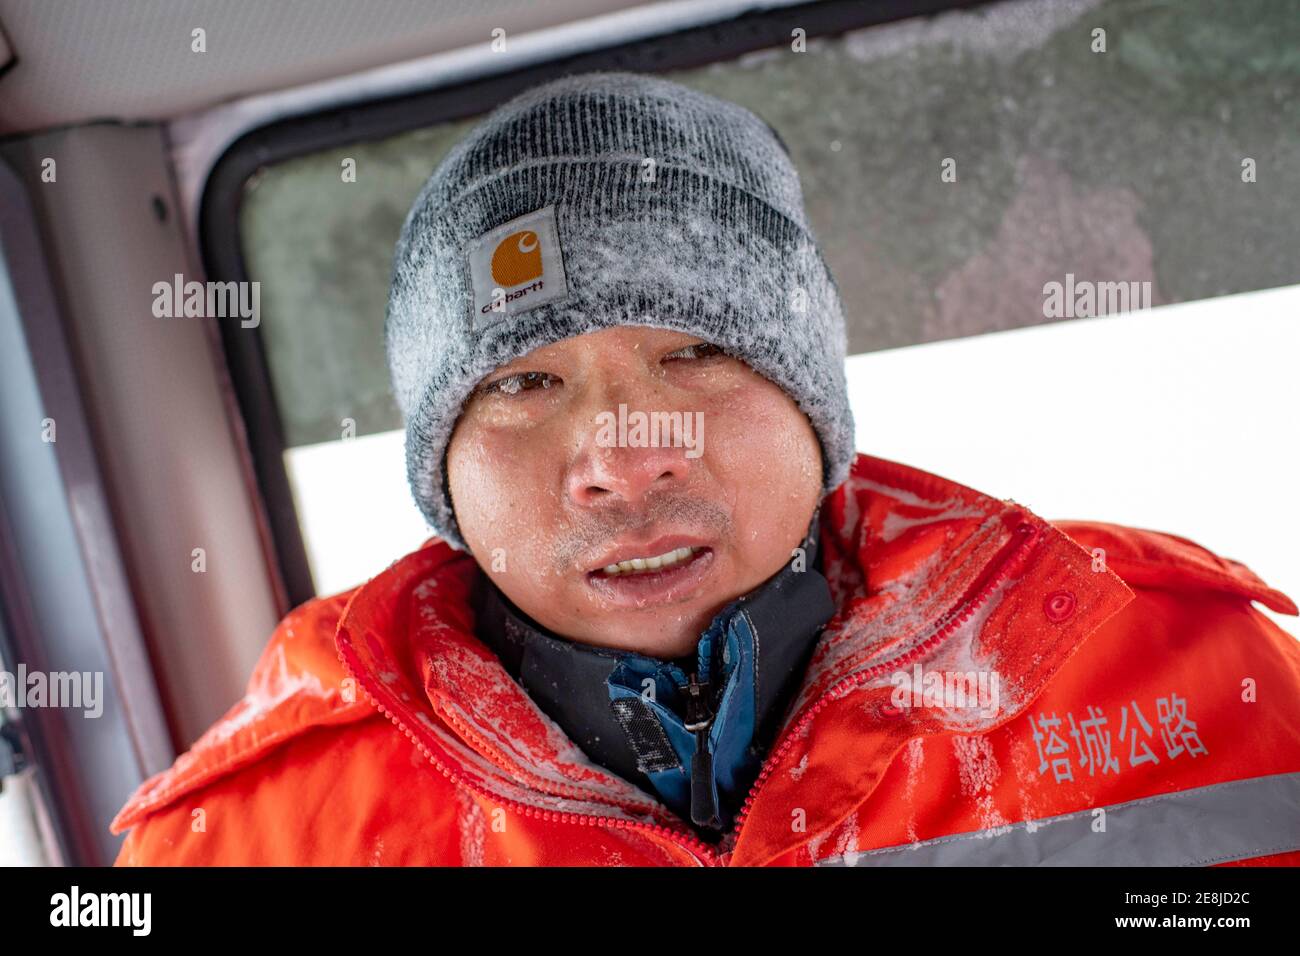 (210131) -- URUMQI, 31 de enero de 2021 (Xinhua) -- un miembro del personal de la base de prevención del viento y salvamento de Maytas regresa al taxi del conductor para mantenerse caliente después de buscar pasajeros varados en Maytas, Condado de Emin de la Región Autónoma Uygur de Xinjiang, noroeste de China, 23 de enero de 2021. Maytas, ubicado en el condado de Emin, es una importante vía con condiciones climáticas difíciles de tormentas de nieve y viento pesado durante aproximadamente medio año. Desde 2002, la base de prevención y salvamento eólico de Maytas ha sido responsable de la limpieza y salvamento de carreteras del S201 en la región. Para las personas que están de servicio aquí, ¿no Foto de stock